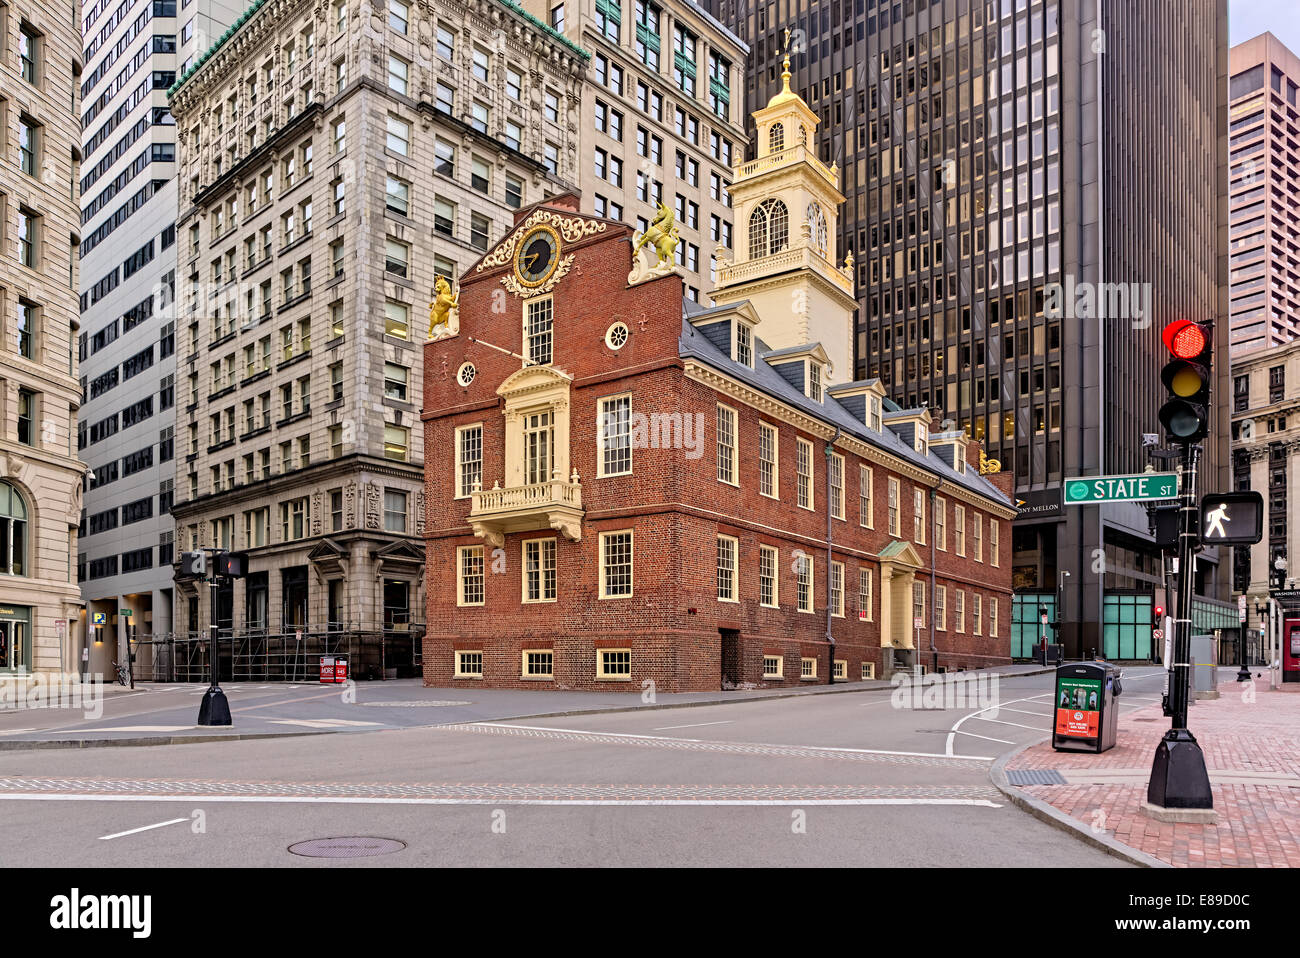 El Old State House edificio histórico en Boston, en la intersección de las calles Washington y Estado. Foto de stock